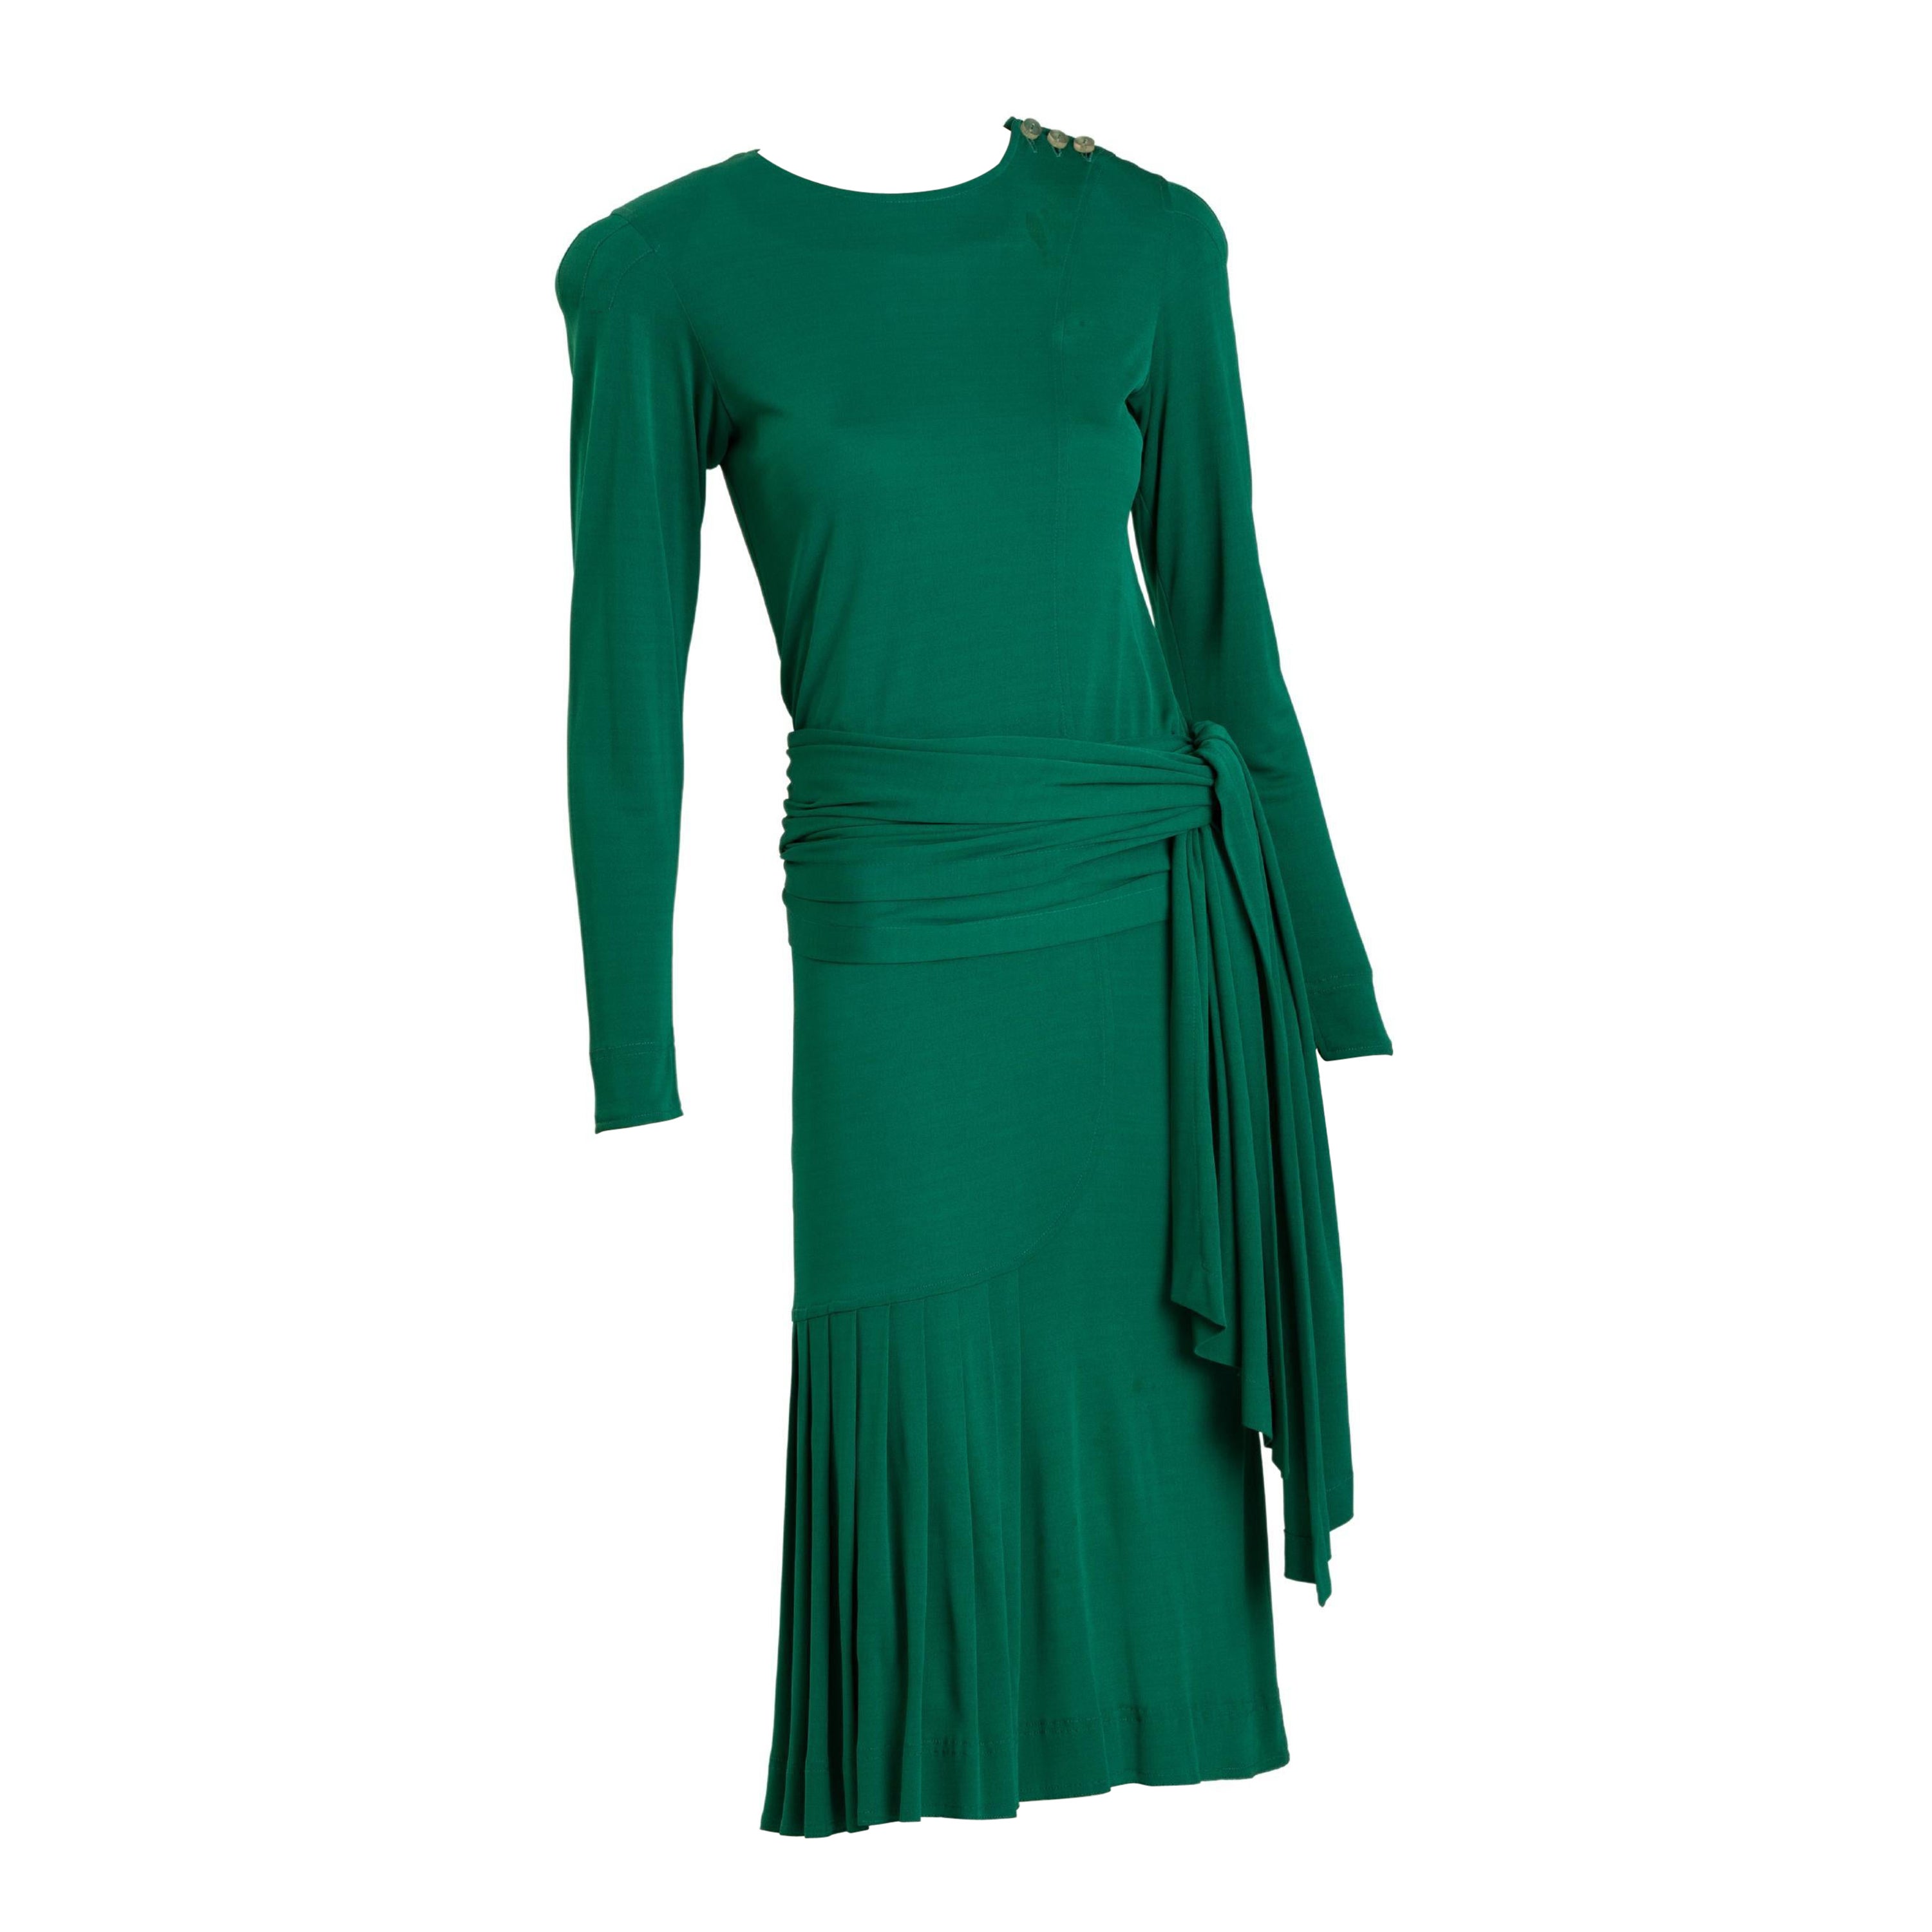 Robe de cocktail Jean Muir en jersey vert émeraude avec longue ceinture enveloppante. La ceinture peut également être portée comme une longue écharpe autour du cou et nouée dans le bas du dos. Le devant de la robe présente des plis asymétriques.